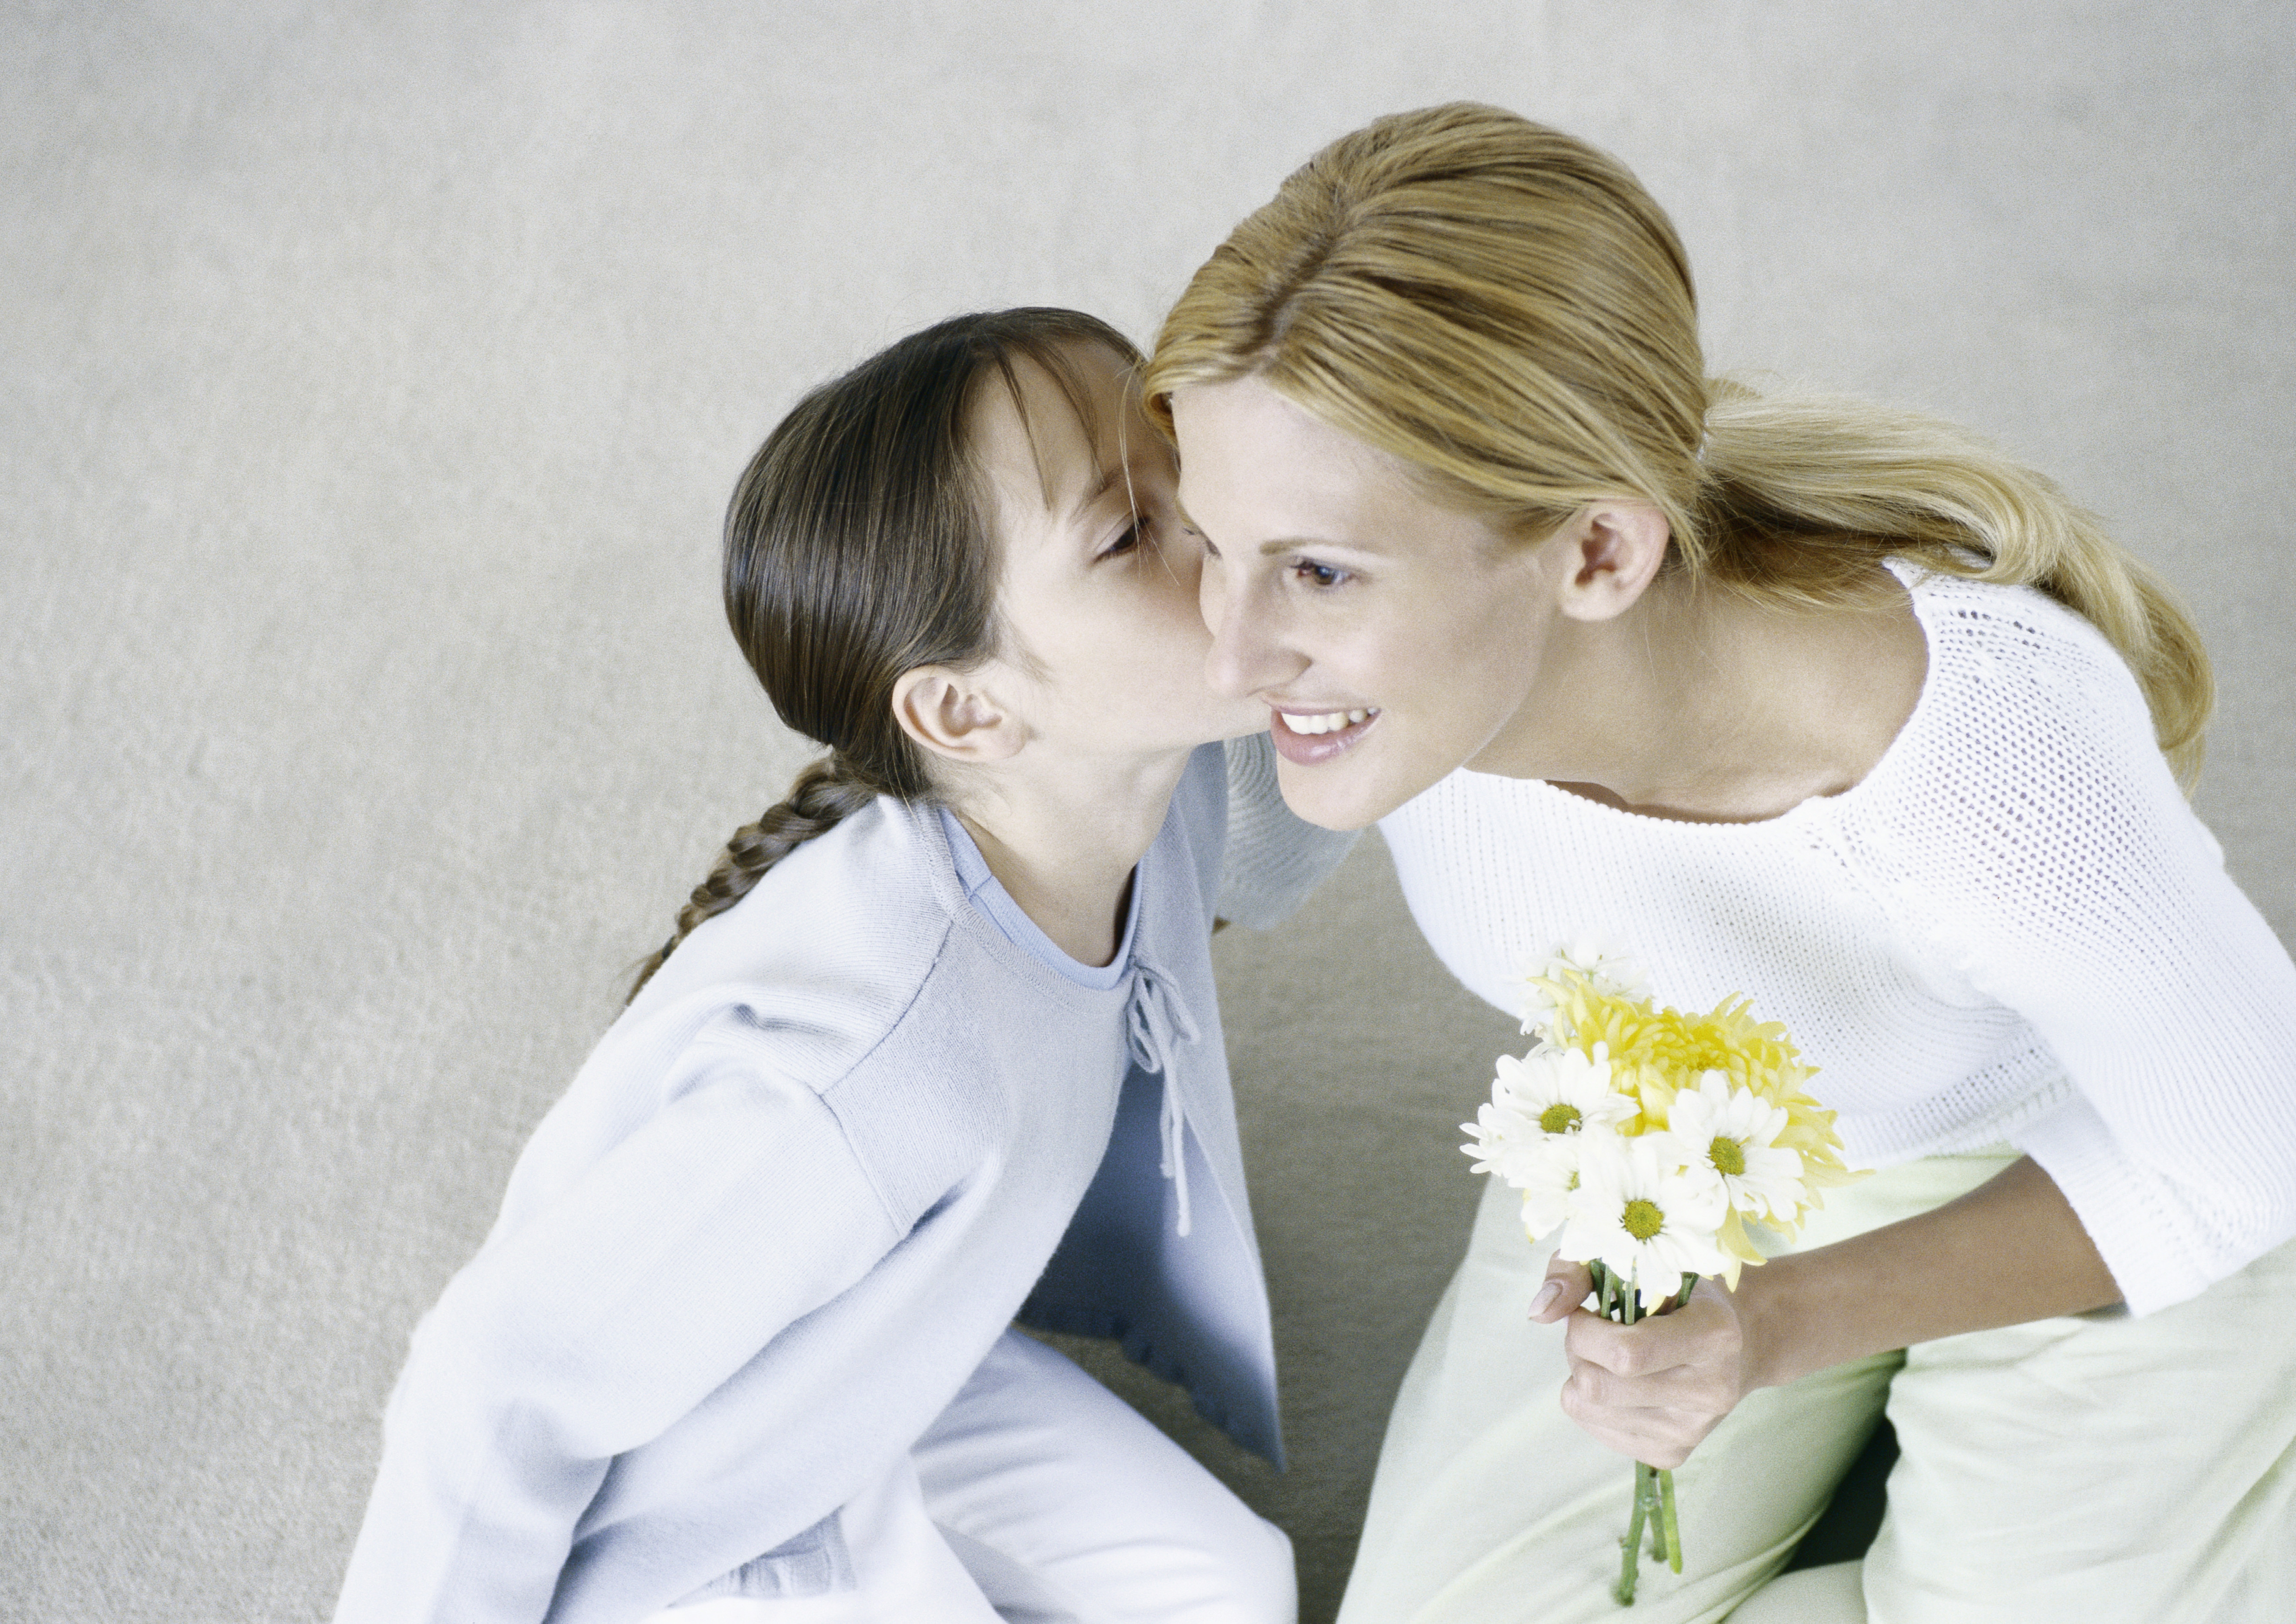 Femme tenant un bouquet de fleurs, fille l'embrassant sur la joue | Source : Getty Images